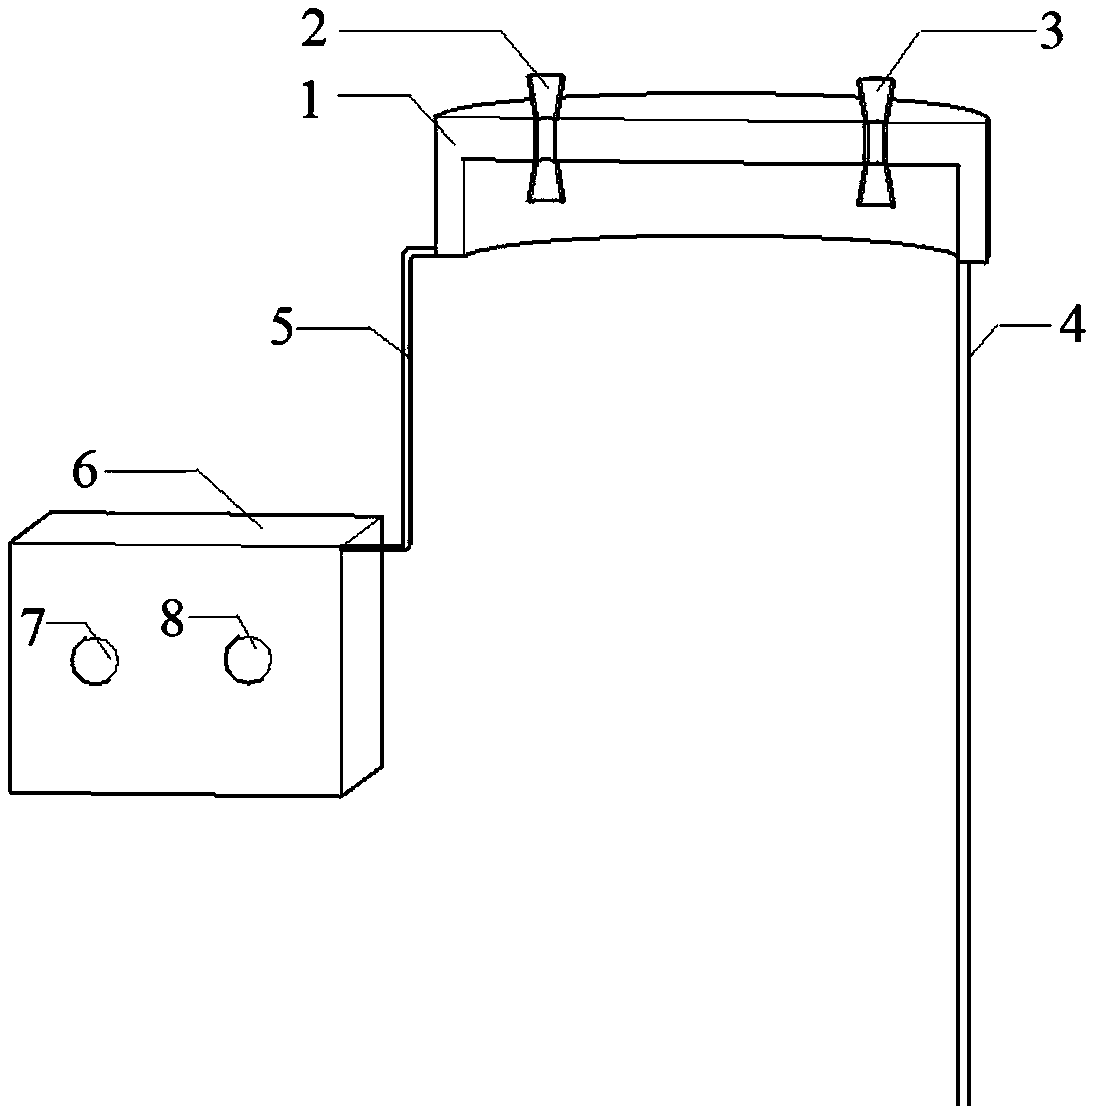 Air pressure regulating device in pile body of anti-slip pile